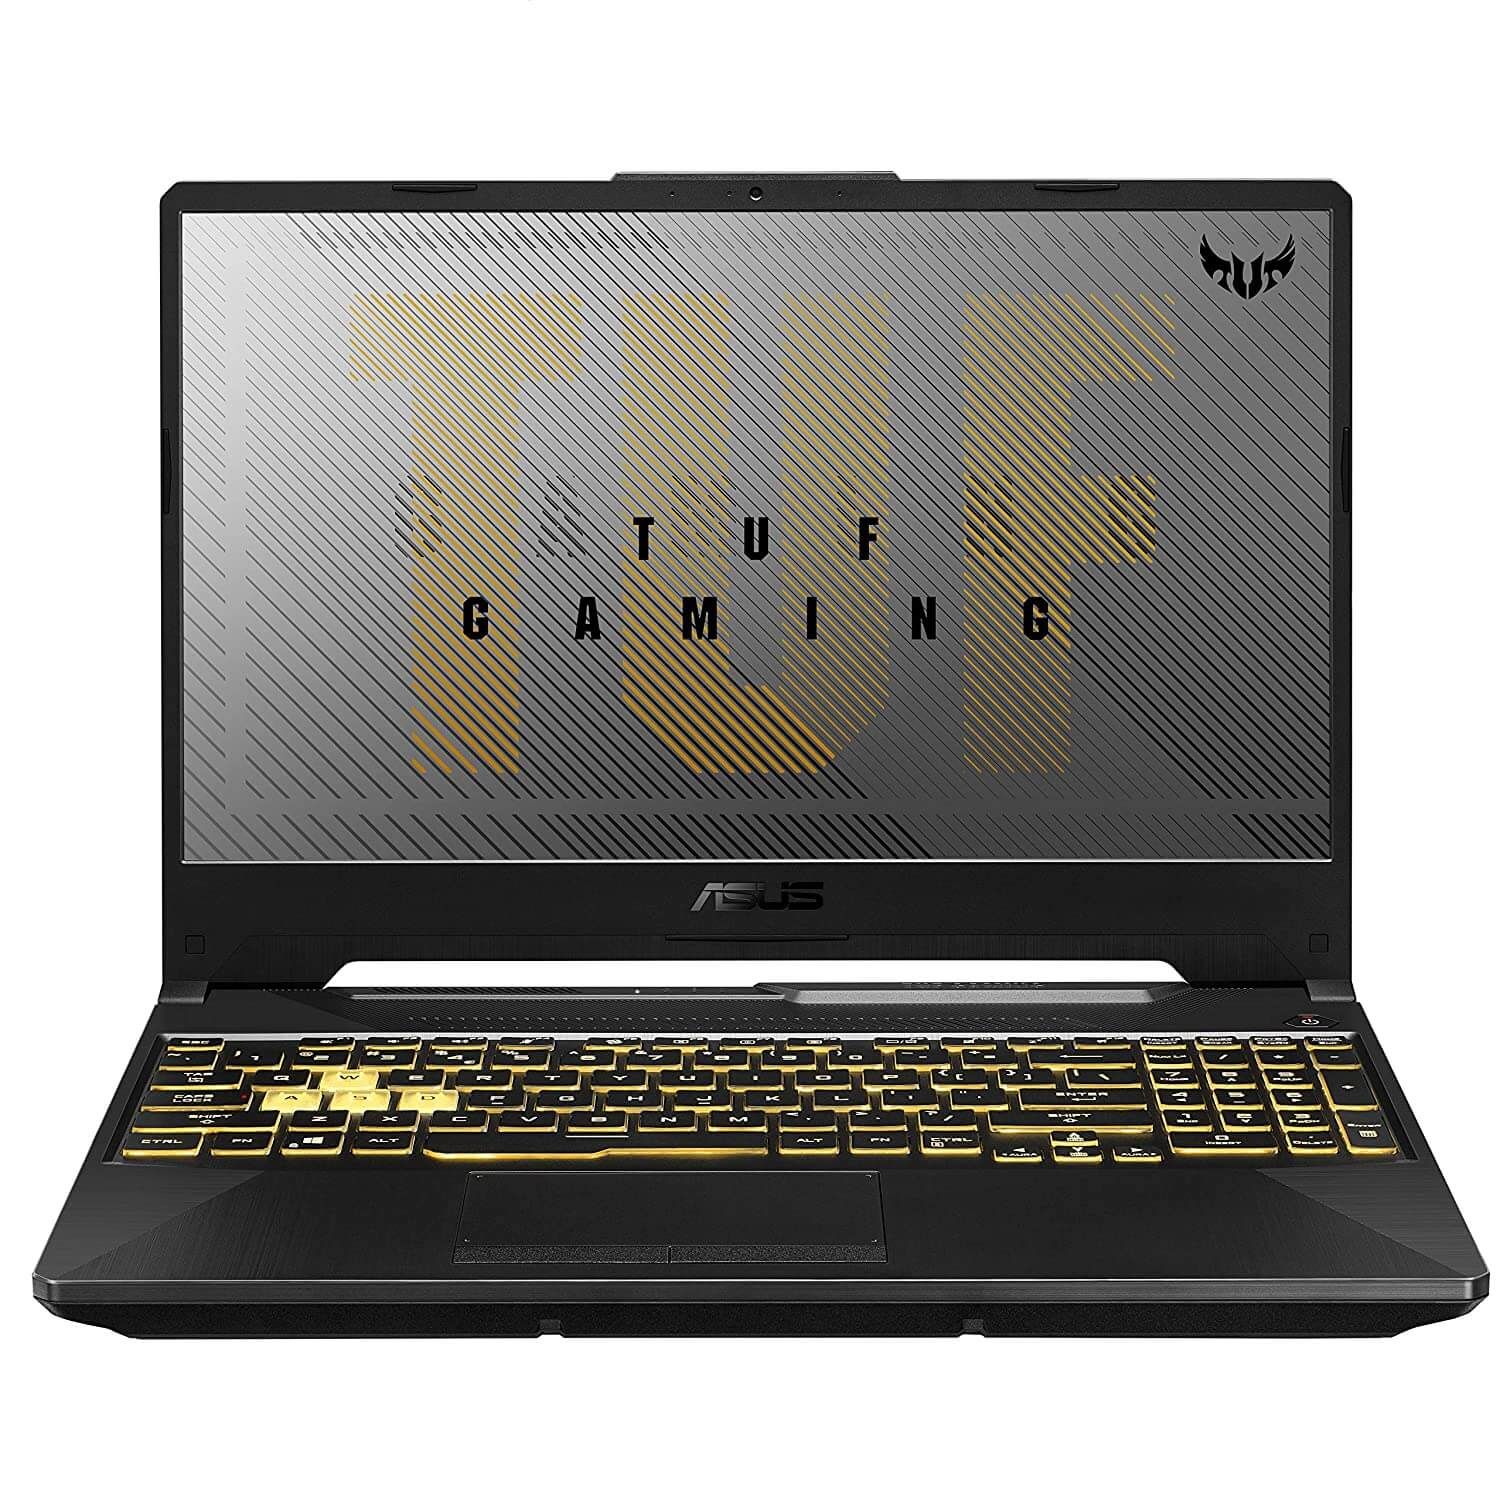 Laptop ASUS TUF Gaming F15, pantalla 15.6" Full HD, intel Core i7-10870H, RAM de 16GB, Disco SSD M.2 512GB, Video GTX1650 4GB GDDR6, Windows 10